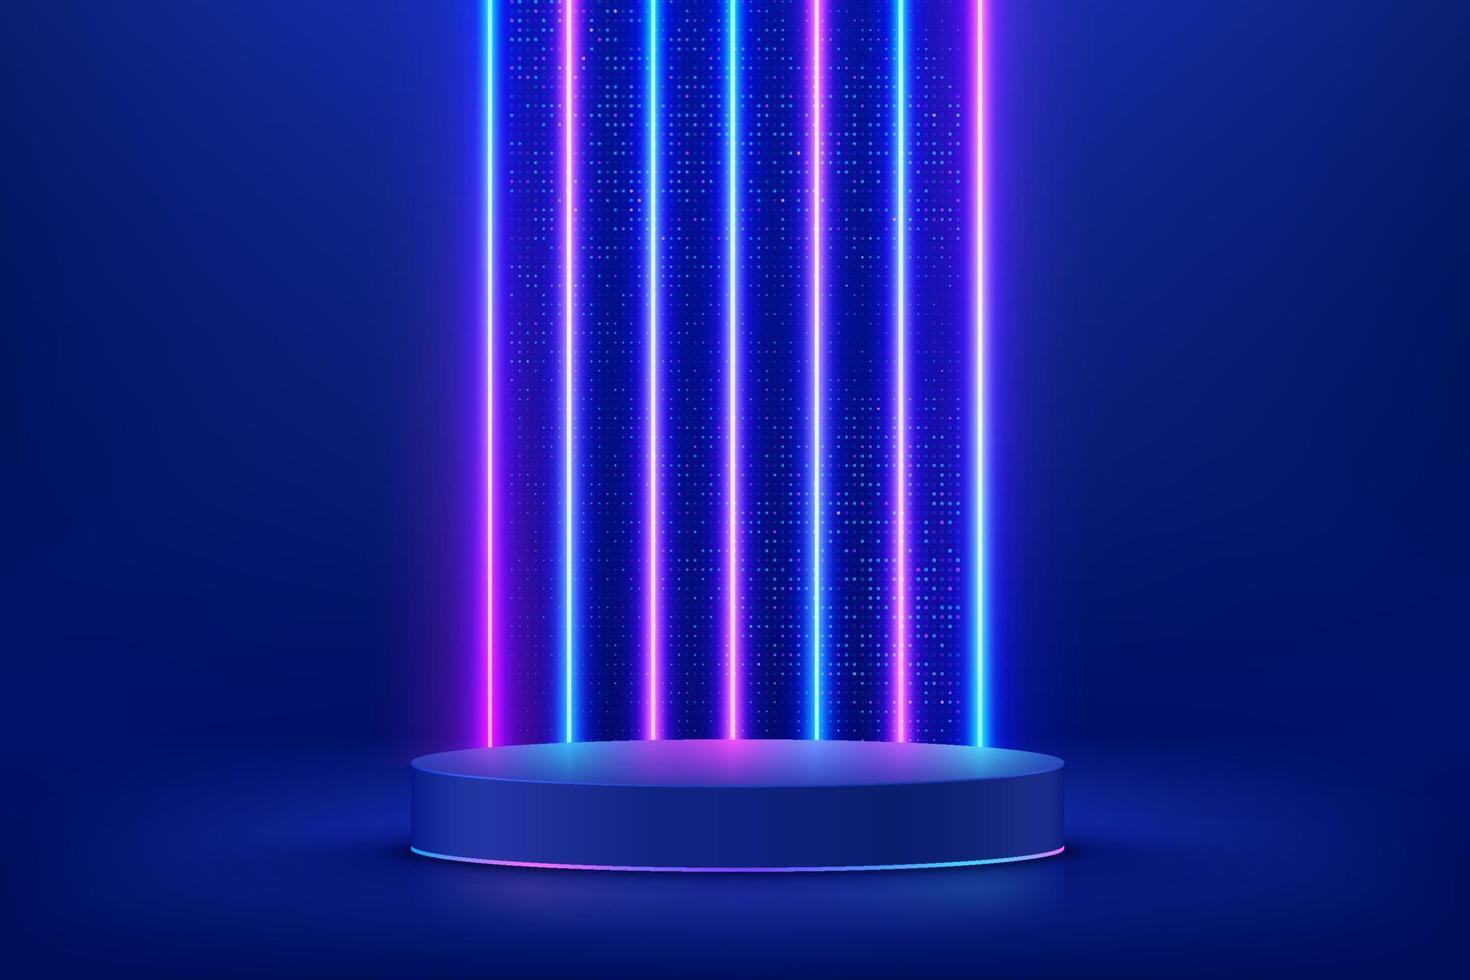 pódio de pedestal de cilindro 3d azul escuro realista. sala abstrata de ficção científica com iluminação neon vertical iluminada e brilho de pontos brilhantes. vetor de renderização de formas geométricas, exibição de produtos. cena futurista